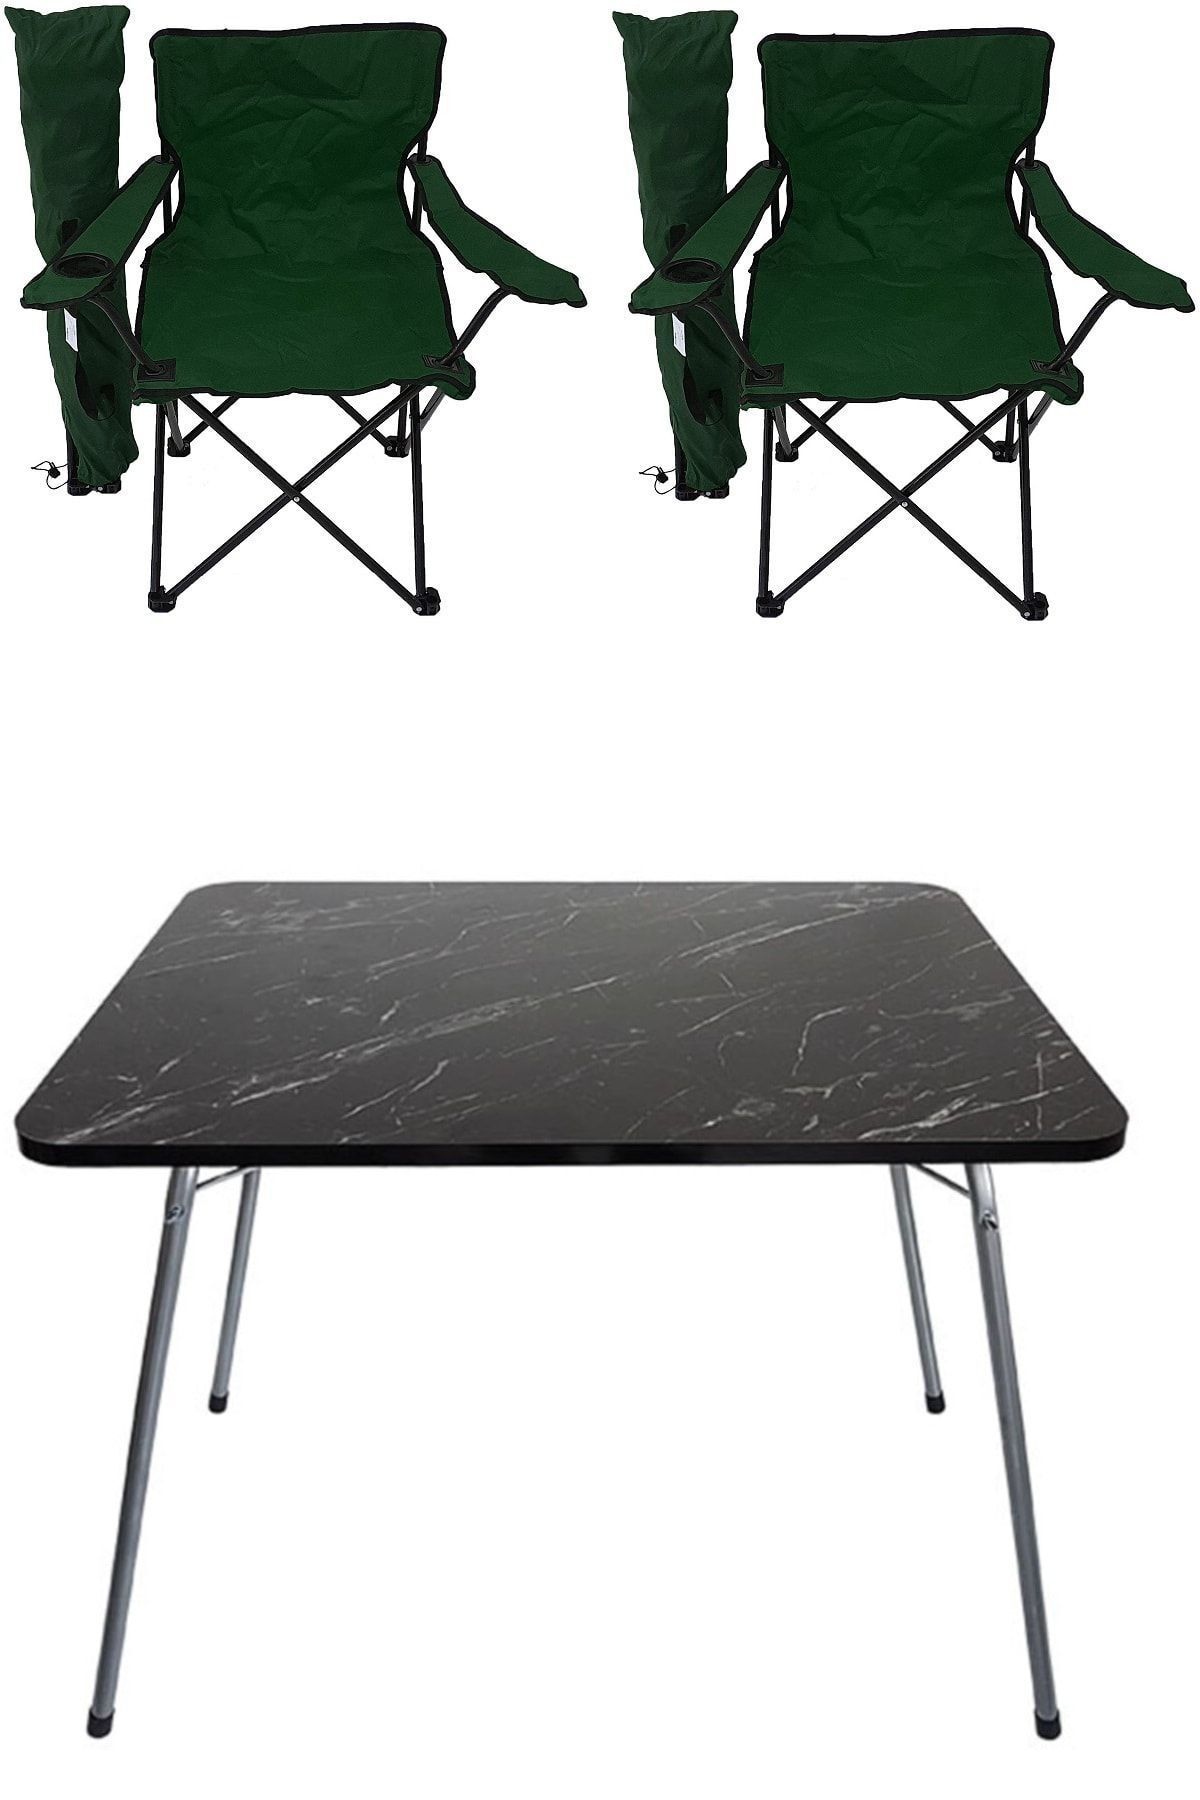 Bofigo 60x80 Granit Katlanır Masa + 2 Adet Kamp Sandalyesi Katlanır Sandalye Piknik Plaj Sandalyesi Yeşil